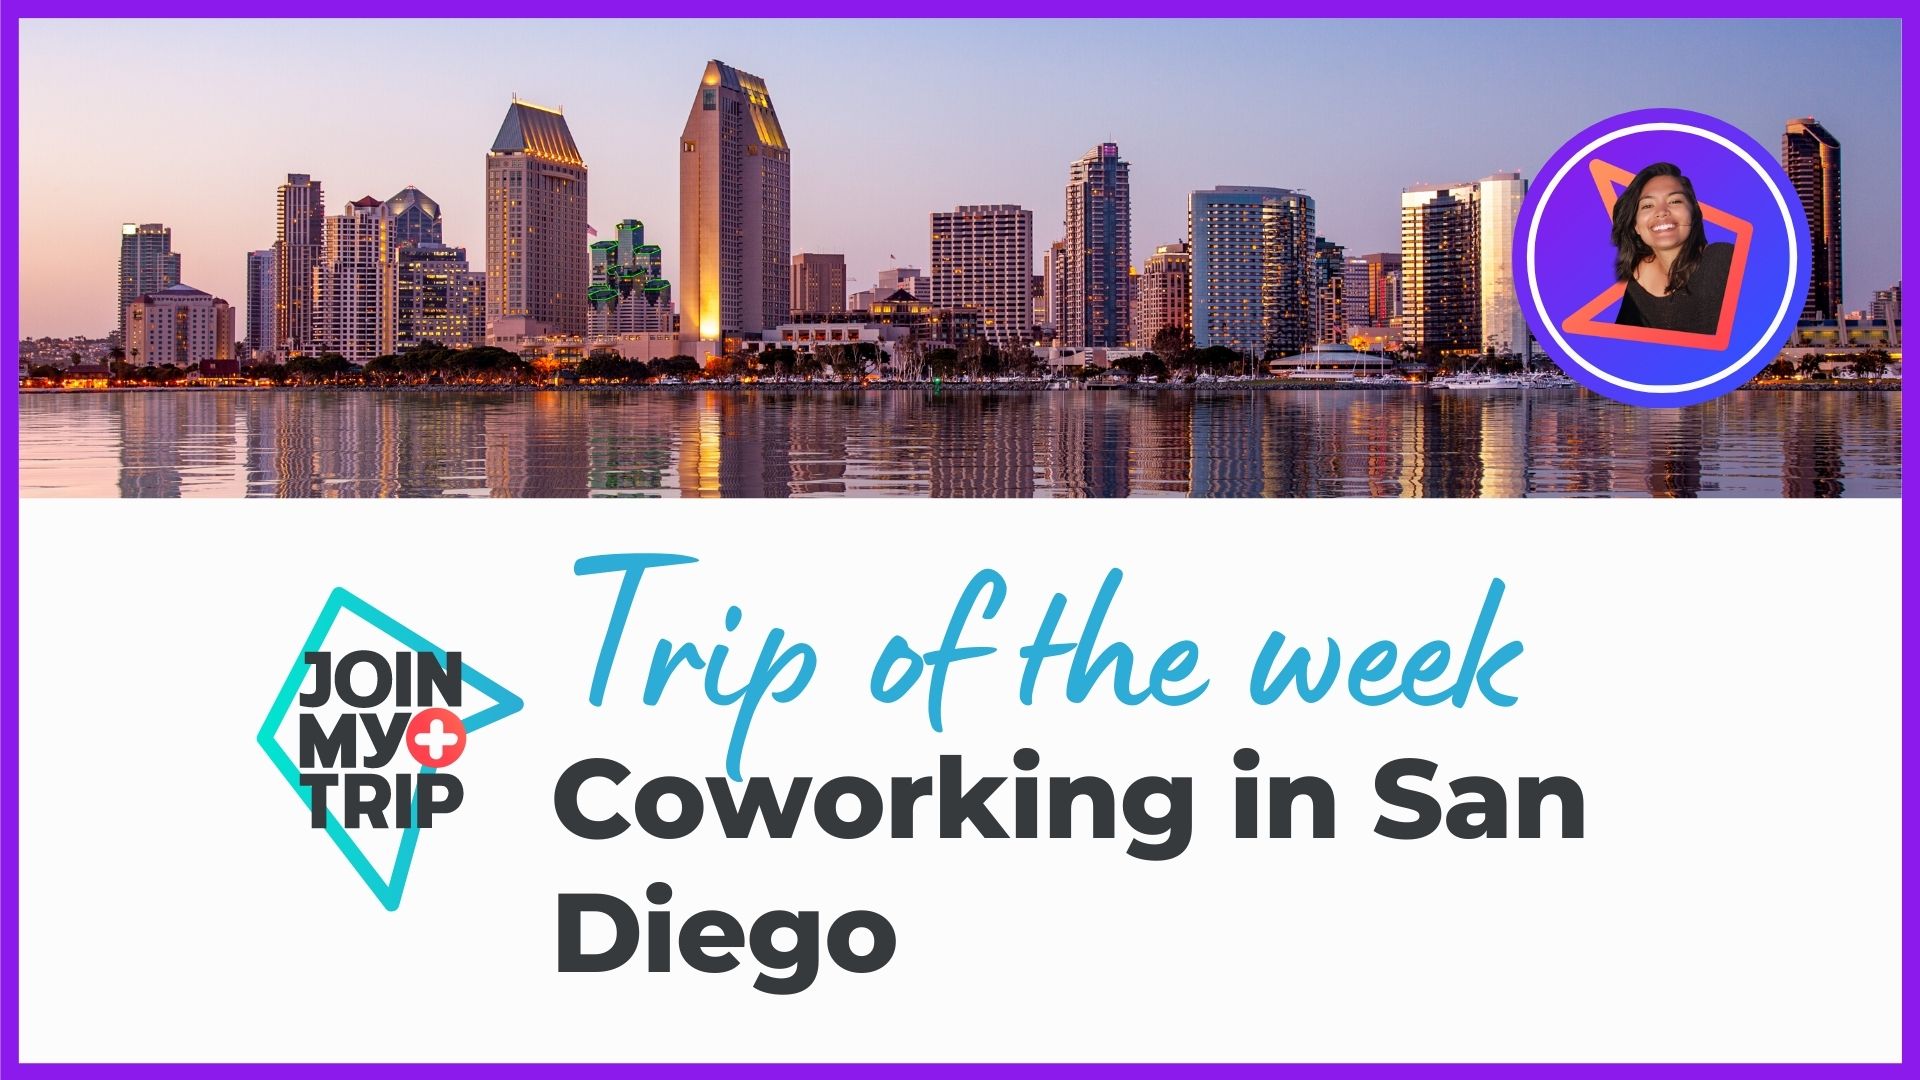 Coworking in San Diego | Trip of the Week